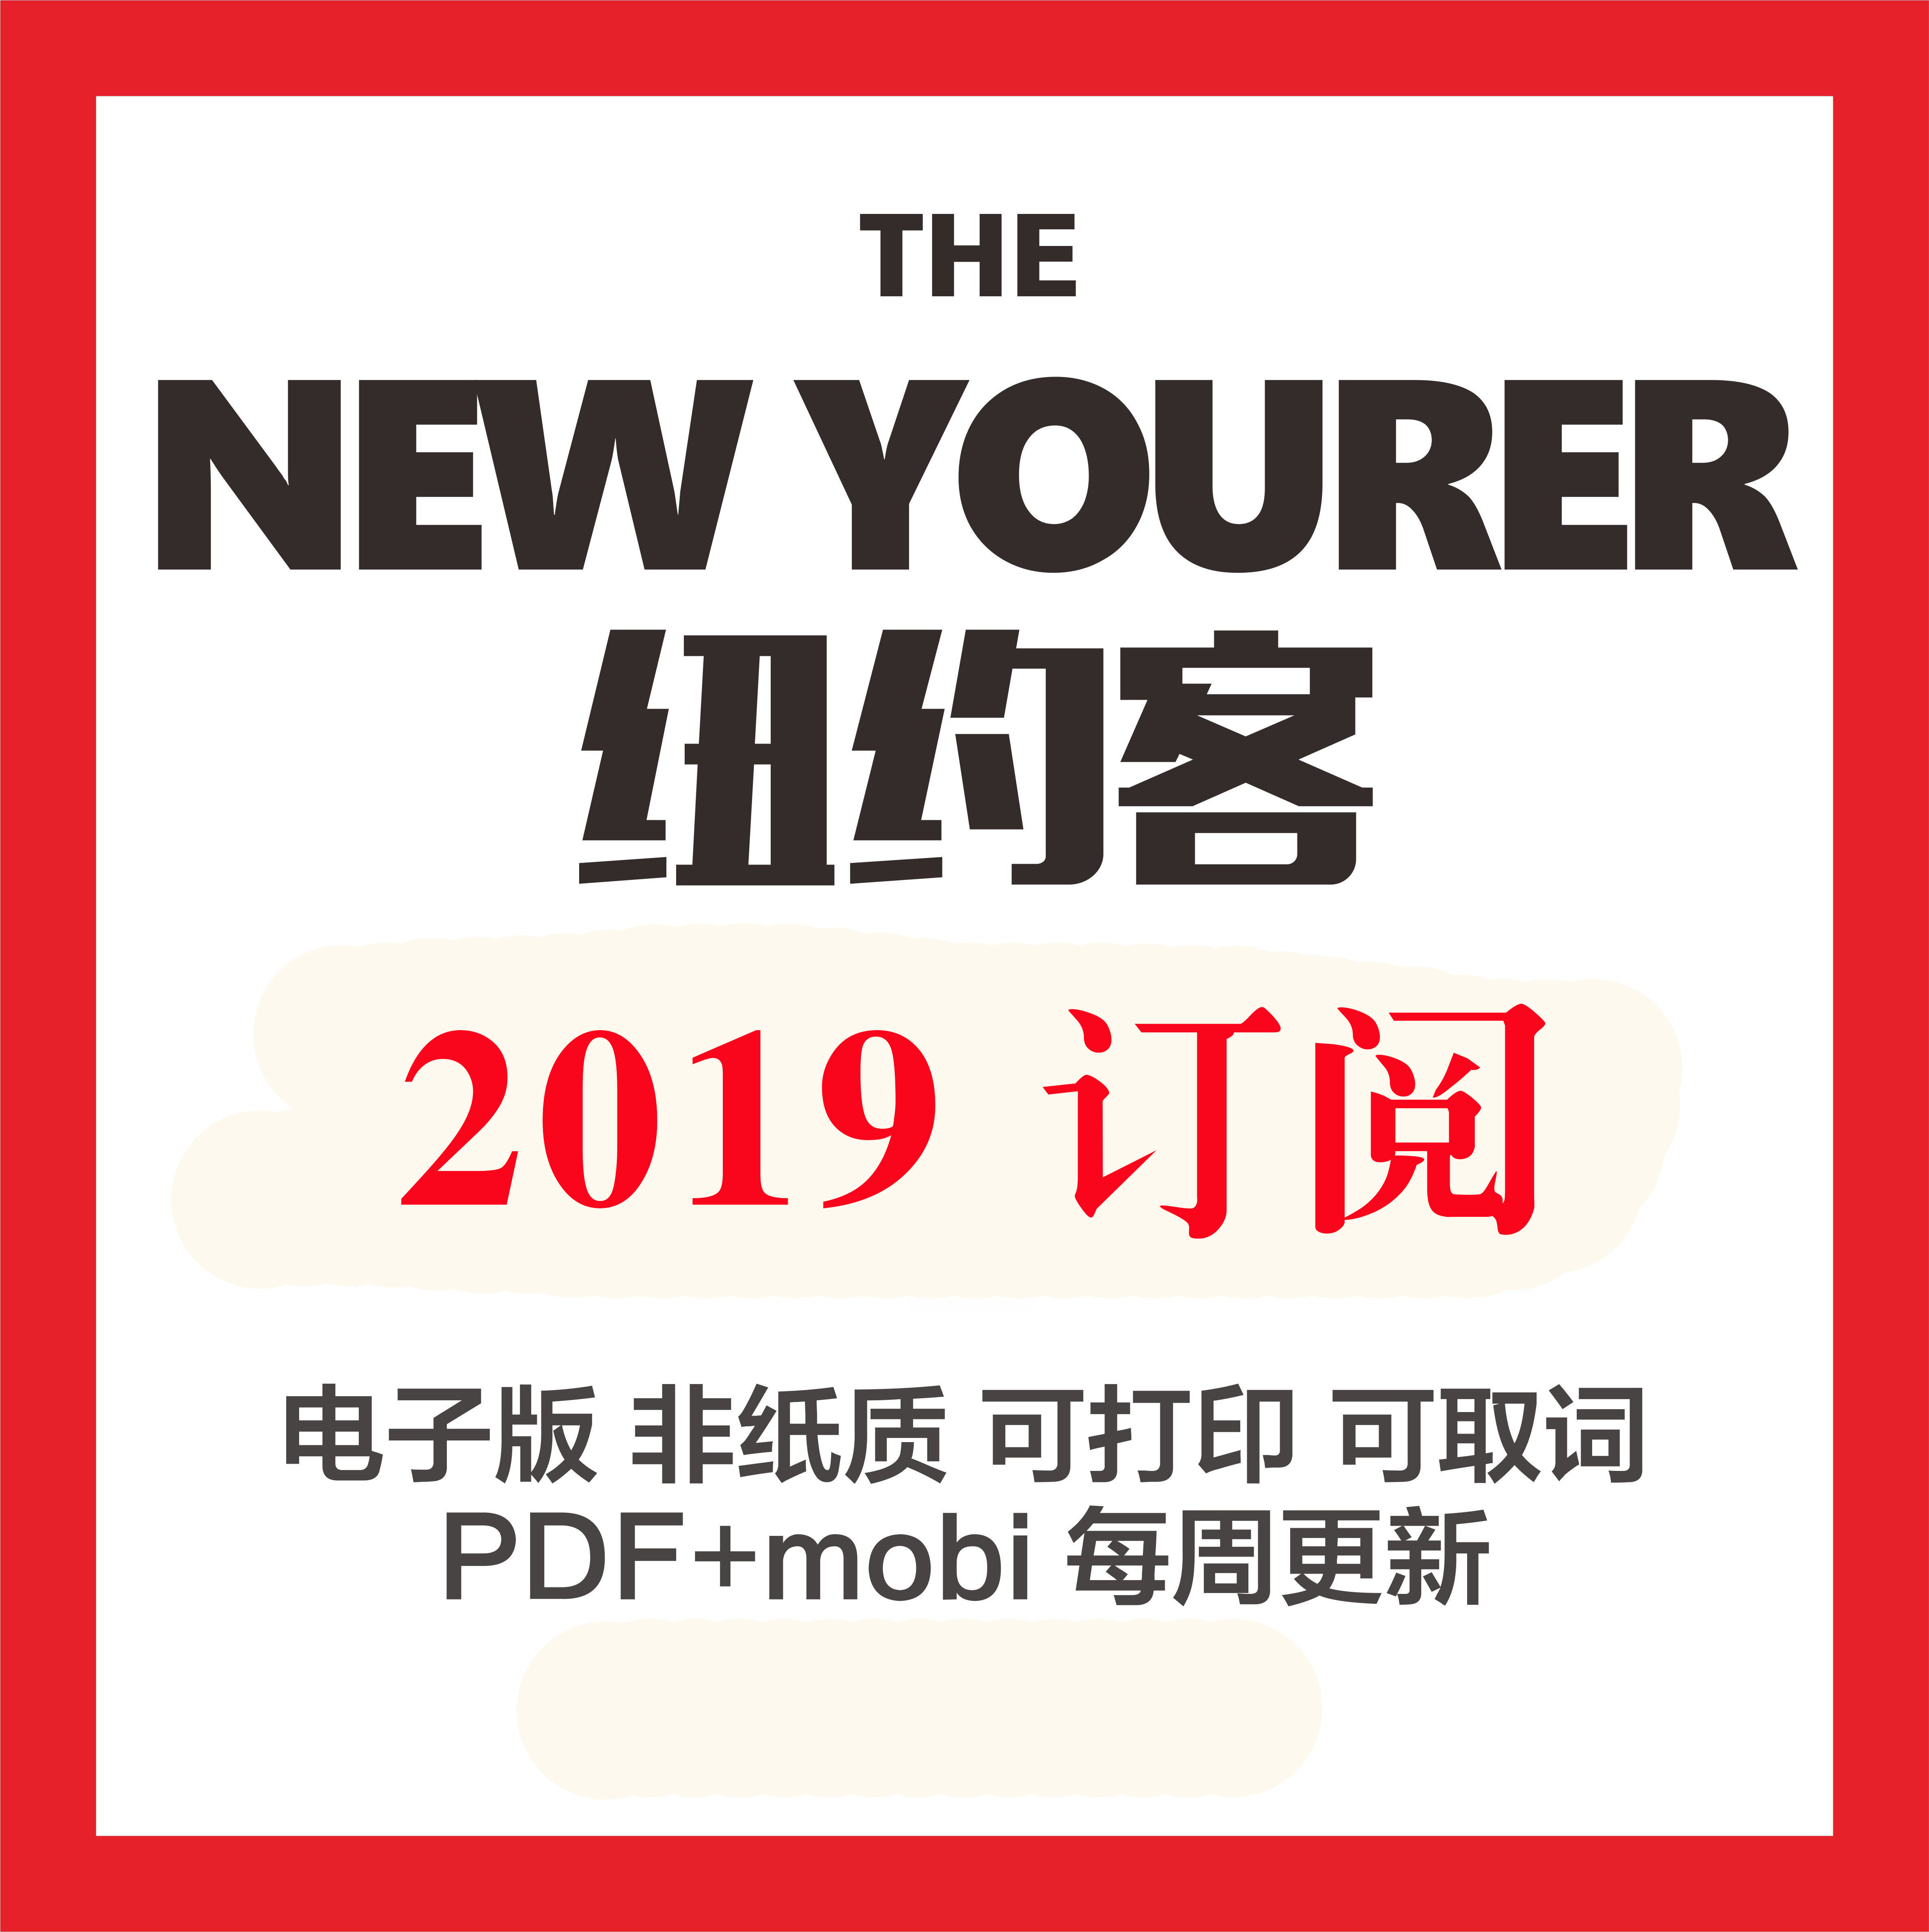 纽约客 The New Yorker 2019全年